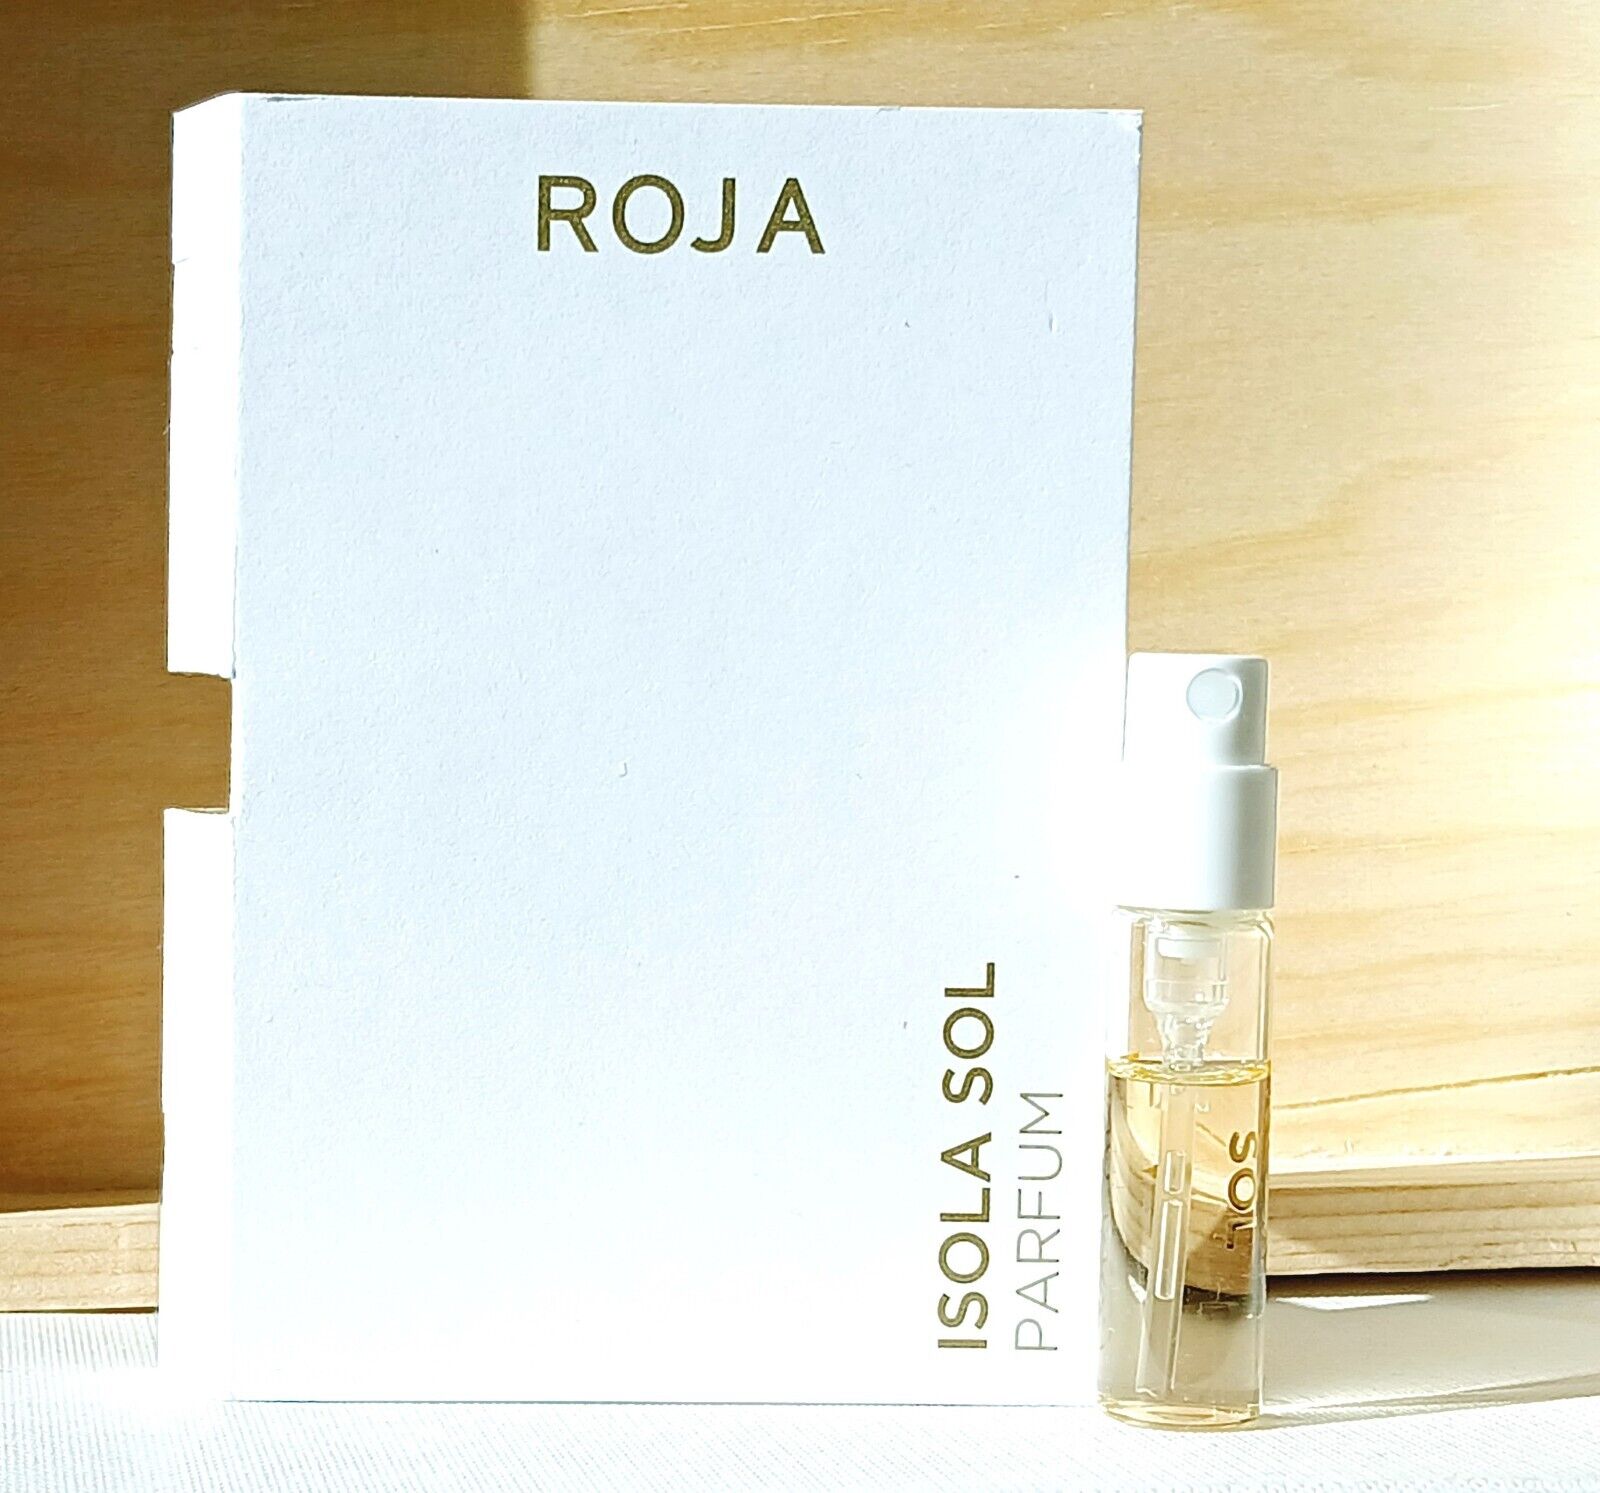 NEW Roja ISOLA SOL eau de parfum / sample spray 2ml try it bella profumum roia